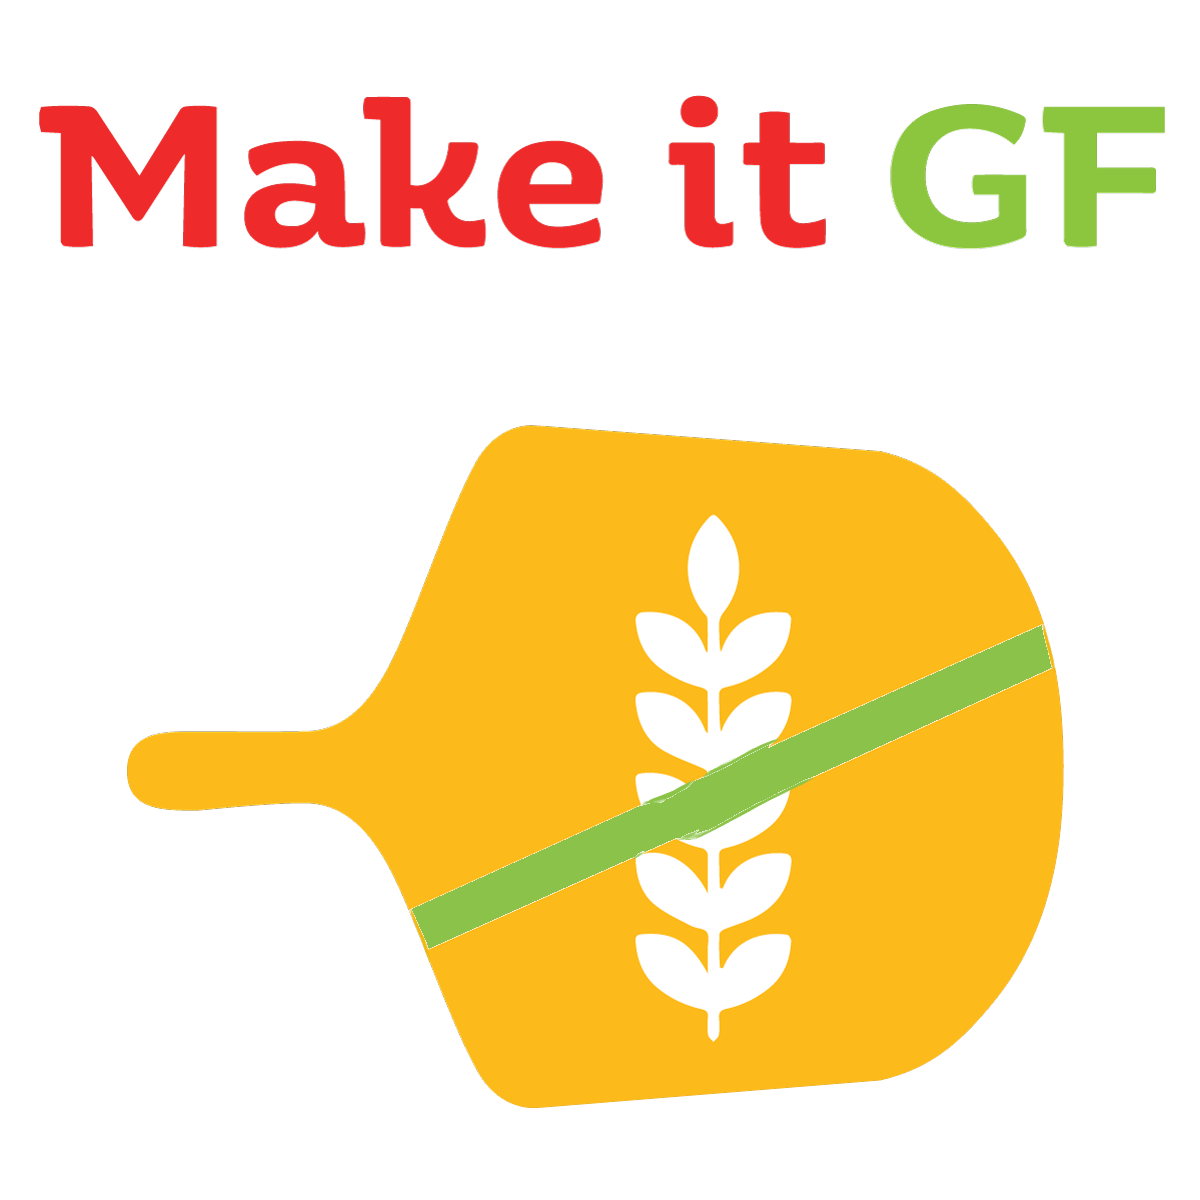 Make it GF - Gluten free